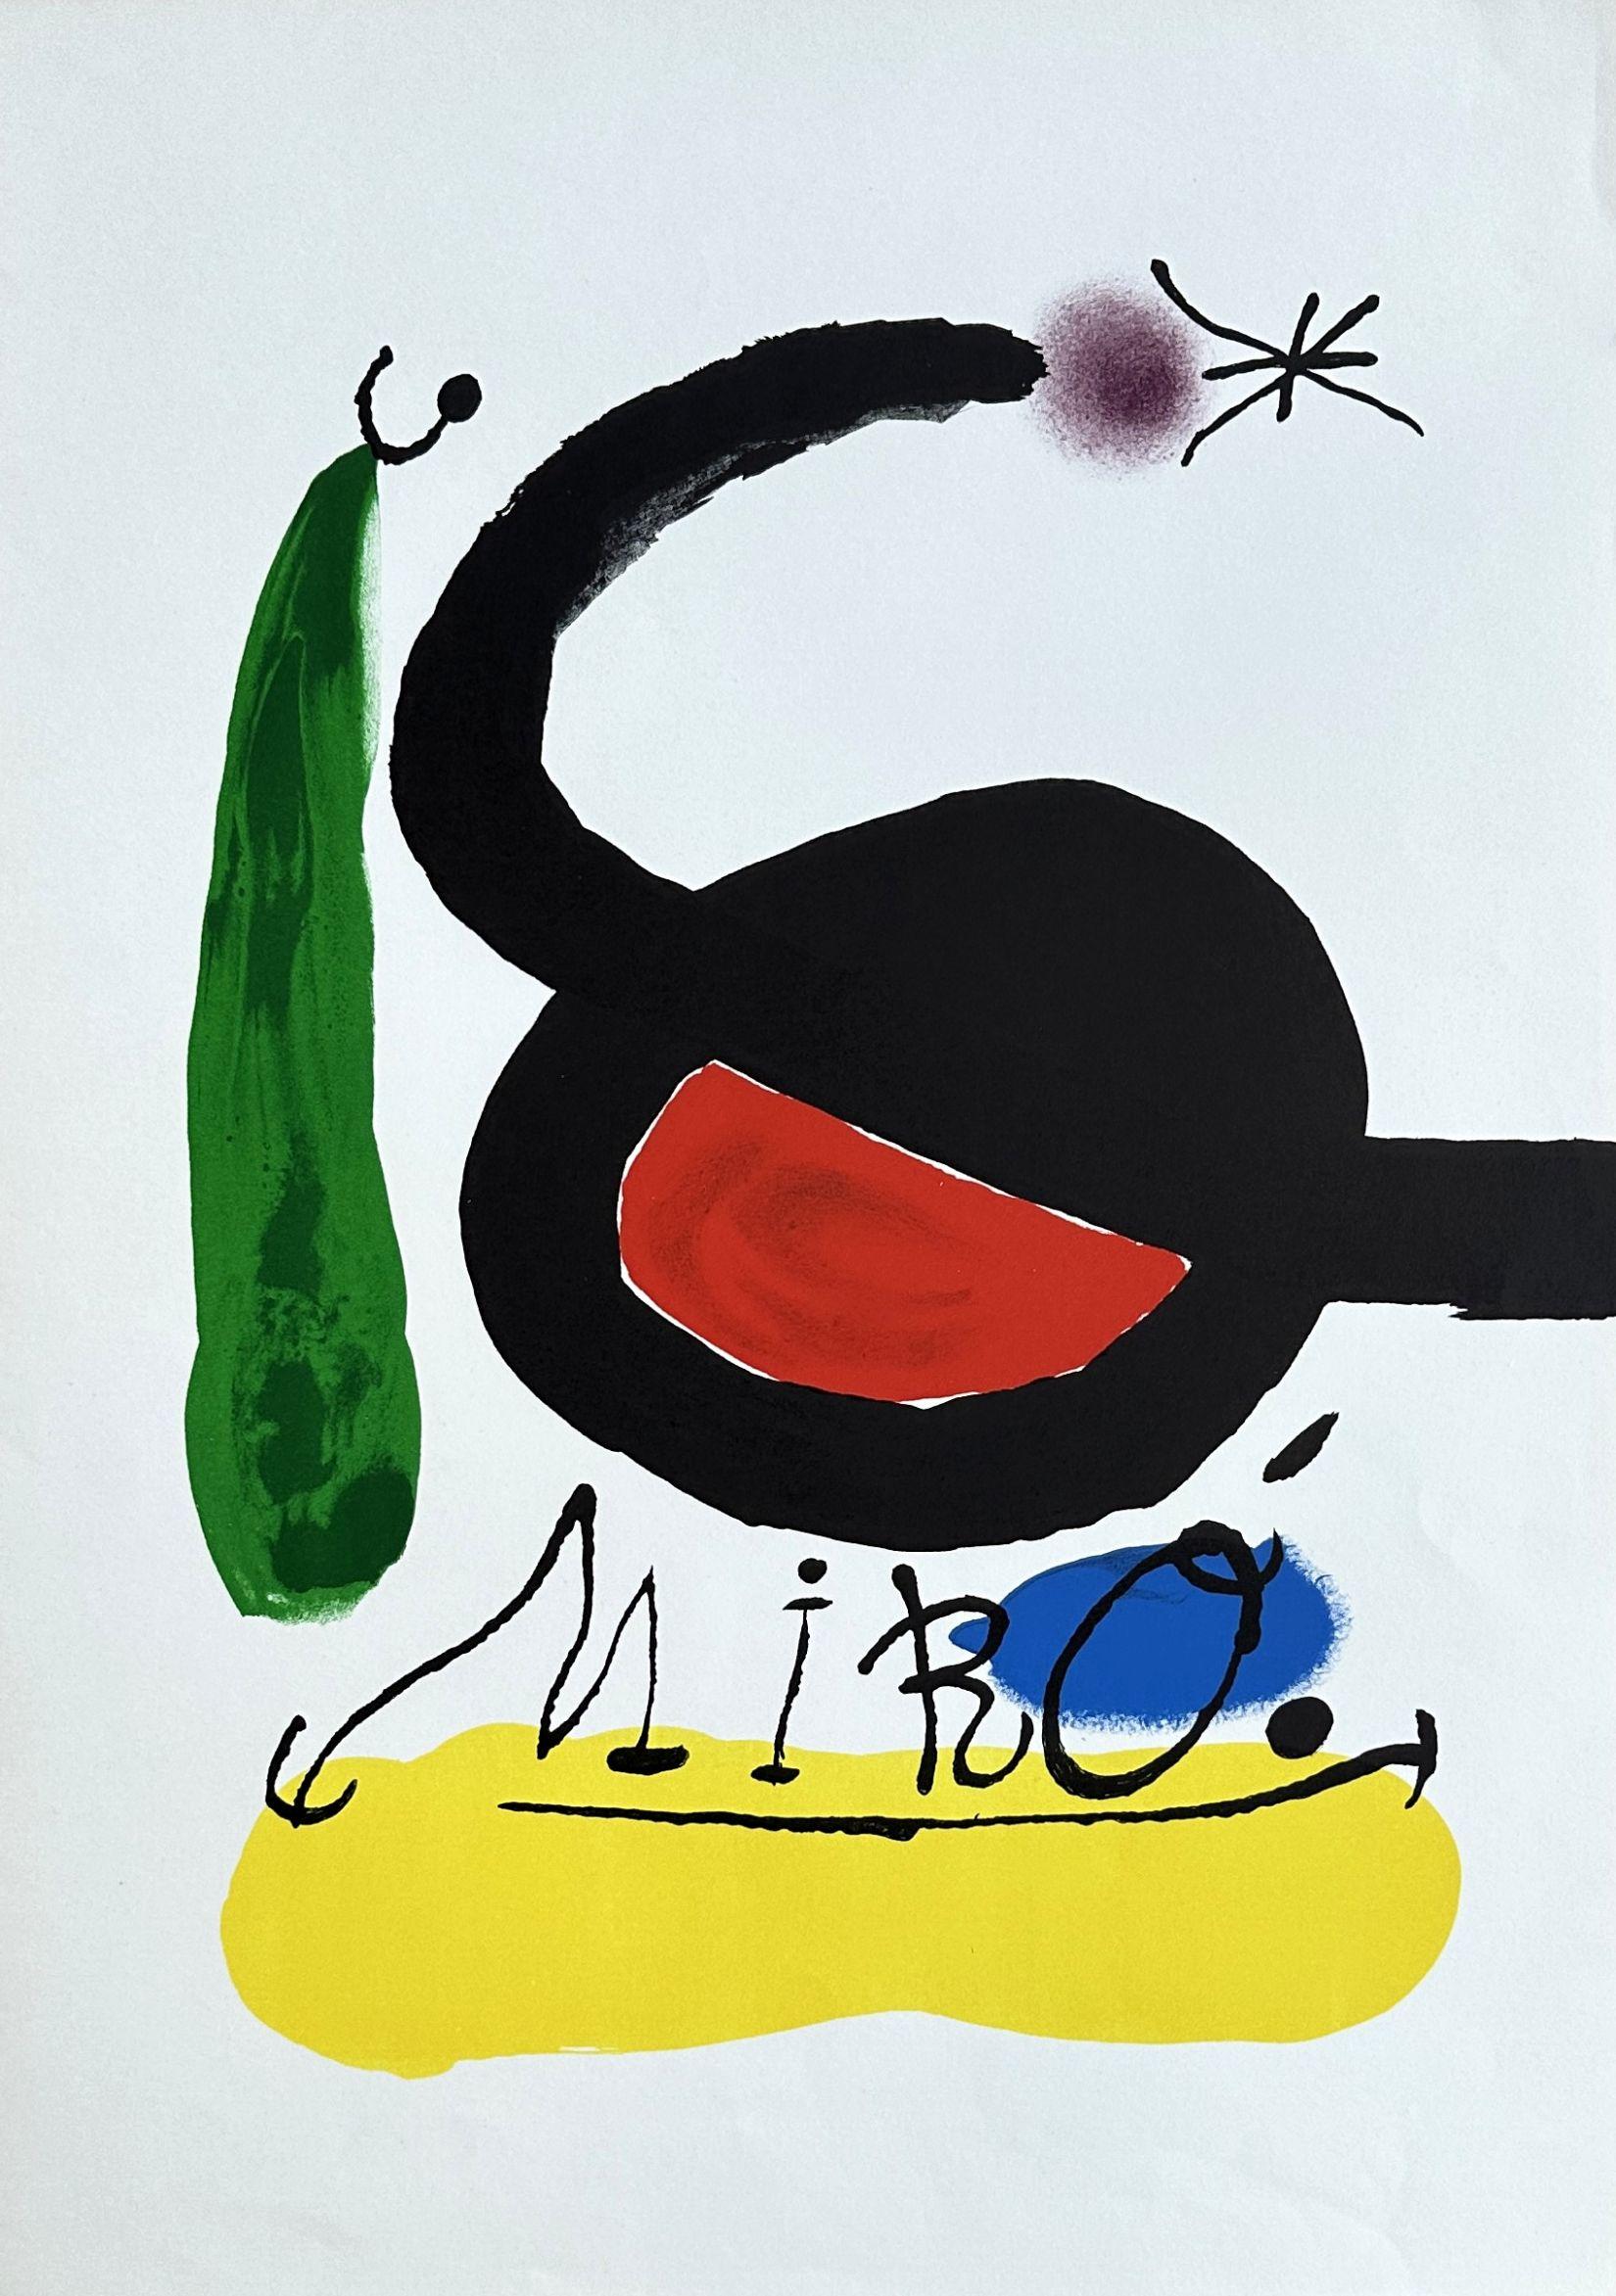 Abstract Print Joan Miró - Oiseau surréaliste - Lithographie en couleurs signée dans l'assiette - 1971